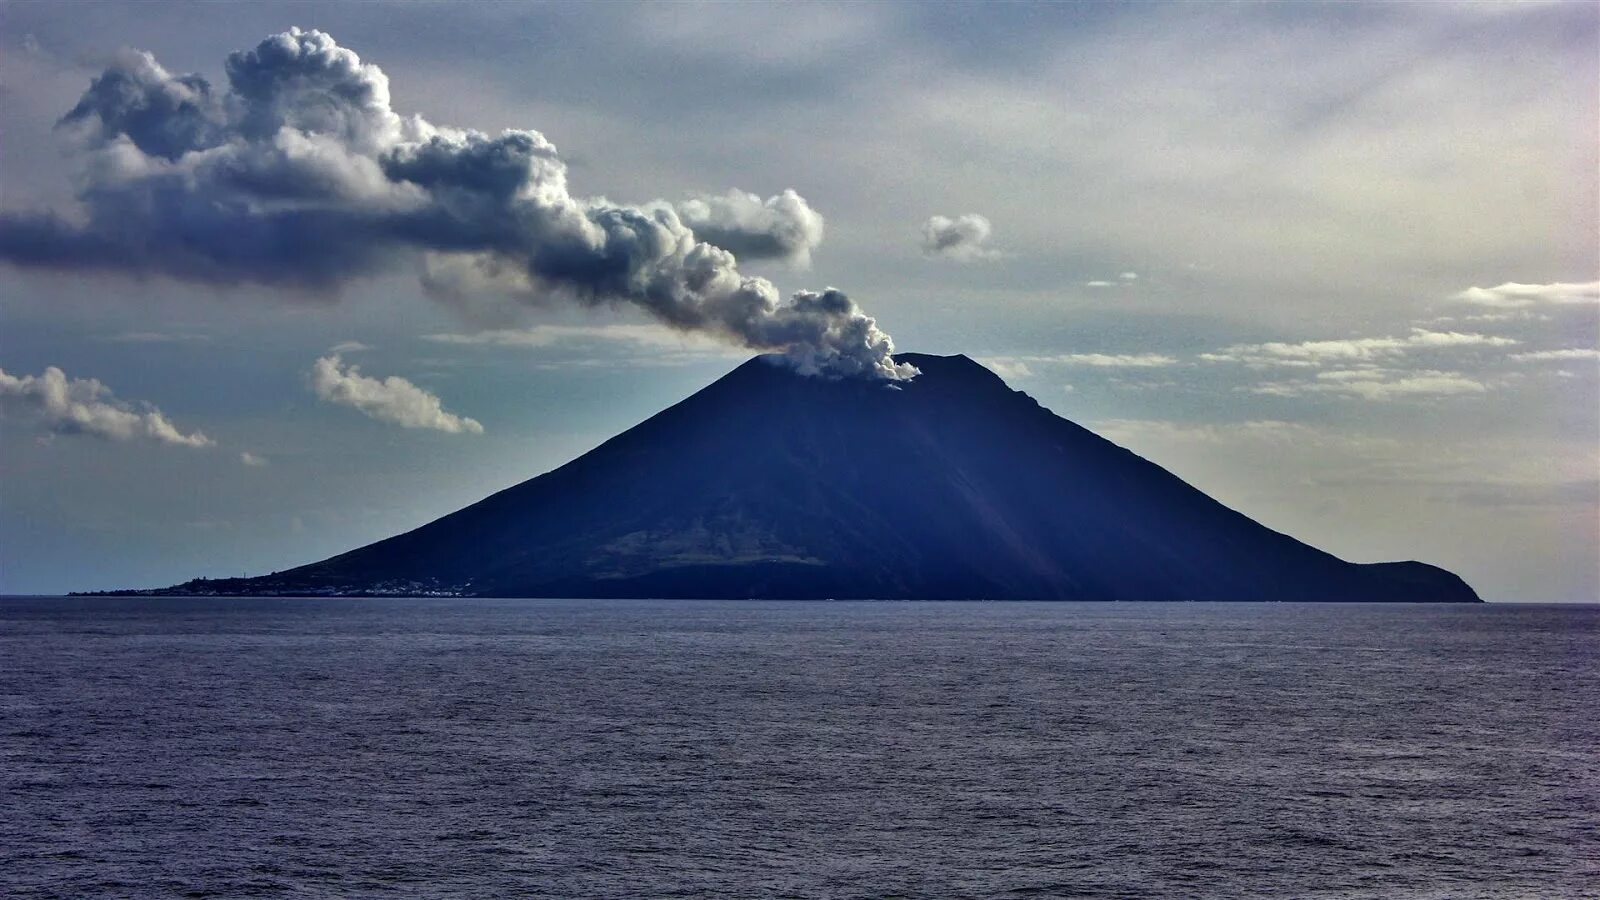 Volcano island. Стромболи вулкан. Остров Стромболи. Остров вулкан Стромболи. Вулкан Стромболи в Италии.